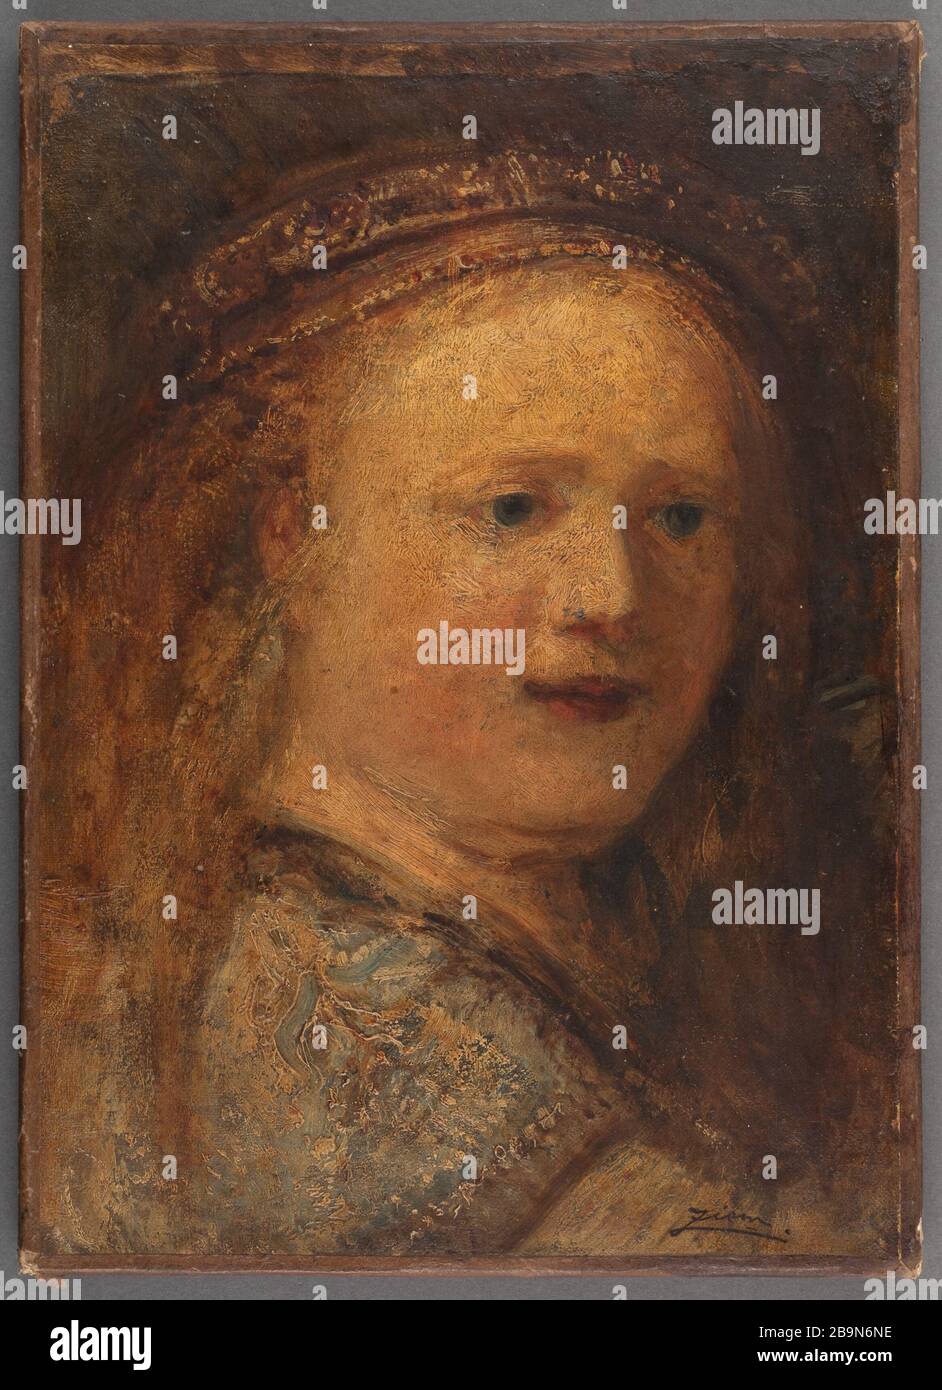 Niña después de Rembrandt Félix Ziem (1821-1911). 'Petite fille d'après Rembrandt'. Huile sur toile. Musée des Beaux-Arts de la Ville de París, Petit Palais. Foto de stock